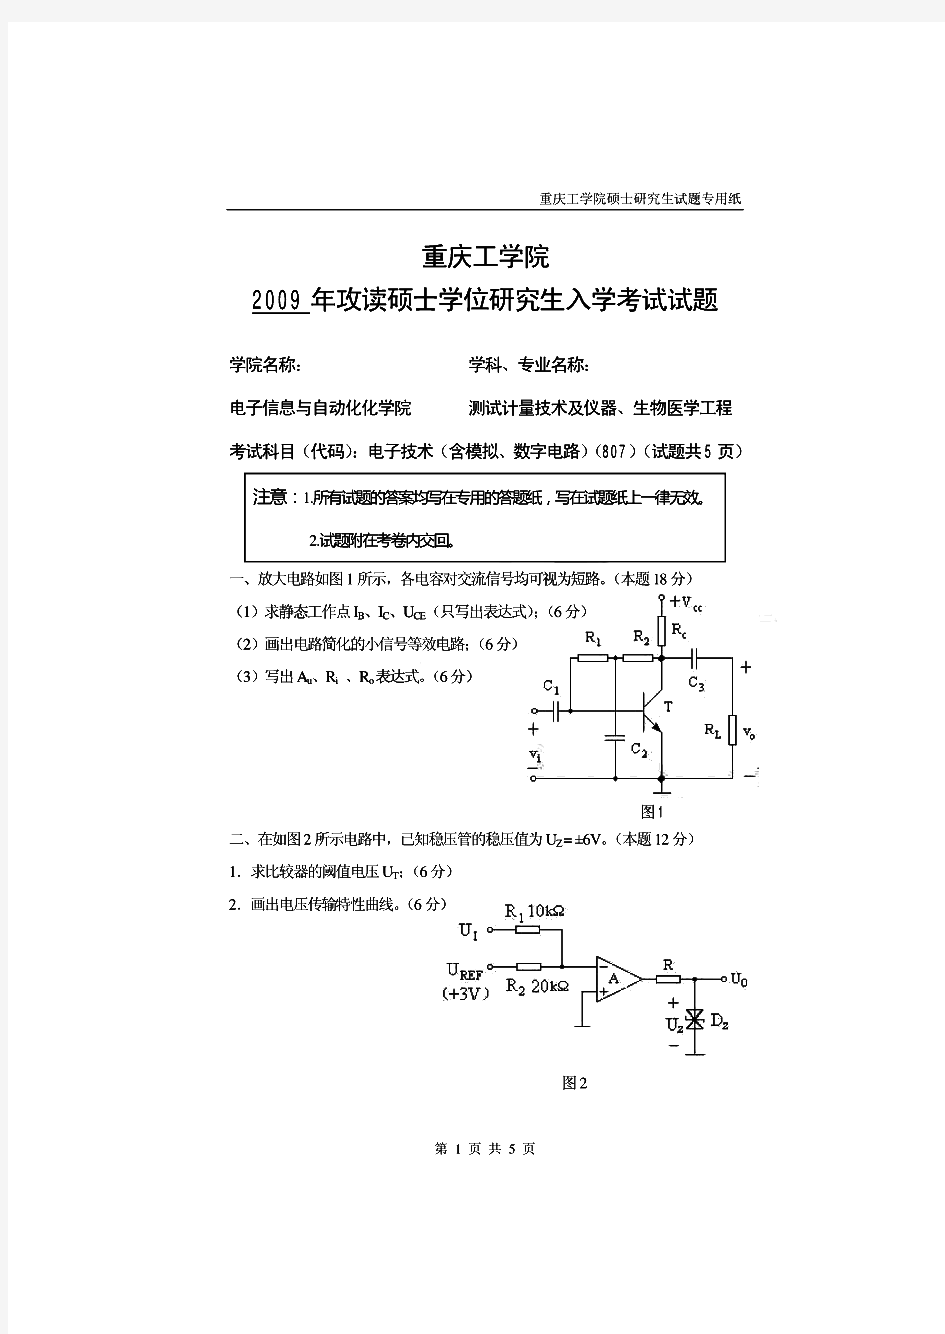 重庆理工大学804电子技术(含模拟电路数字电路)